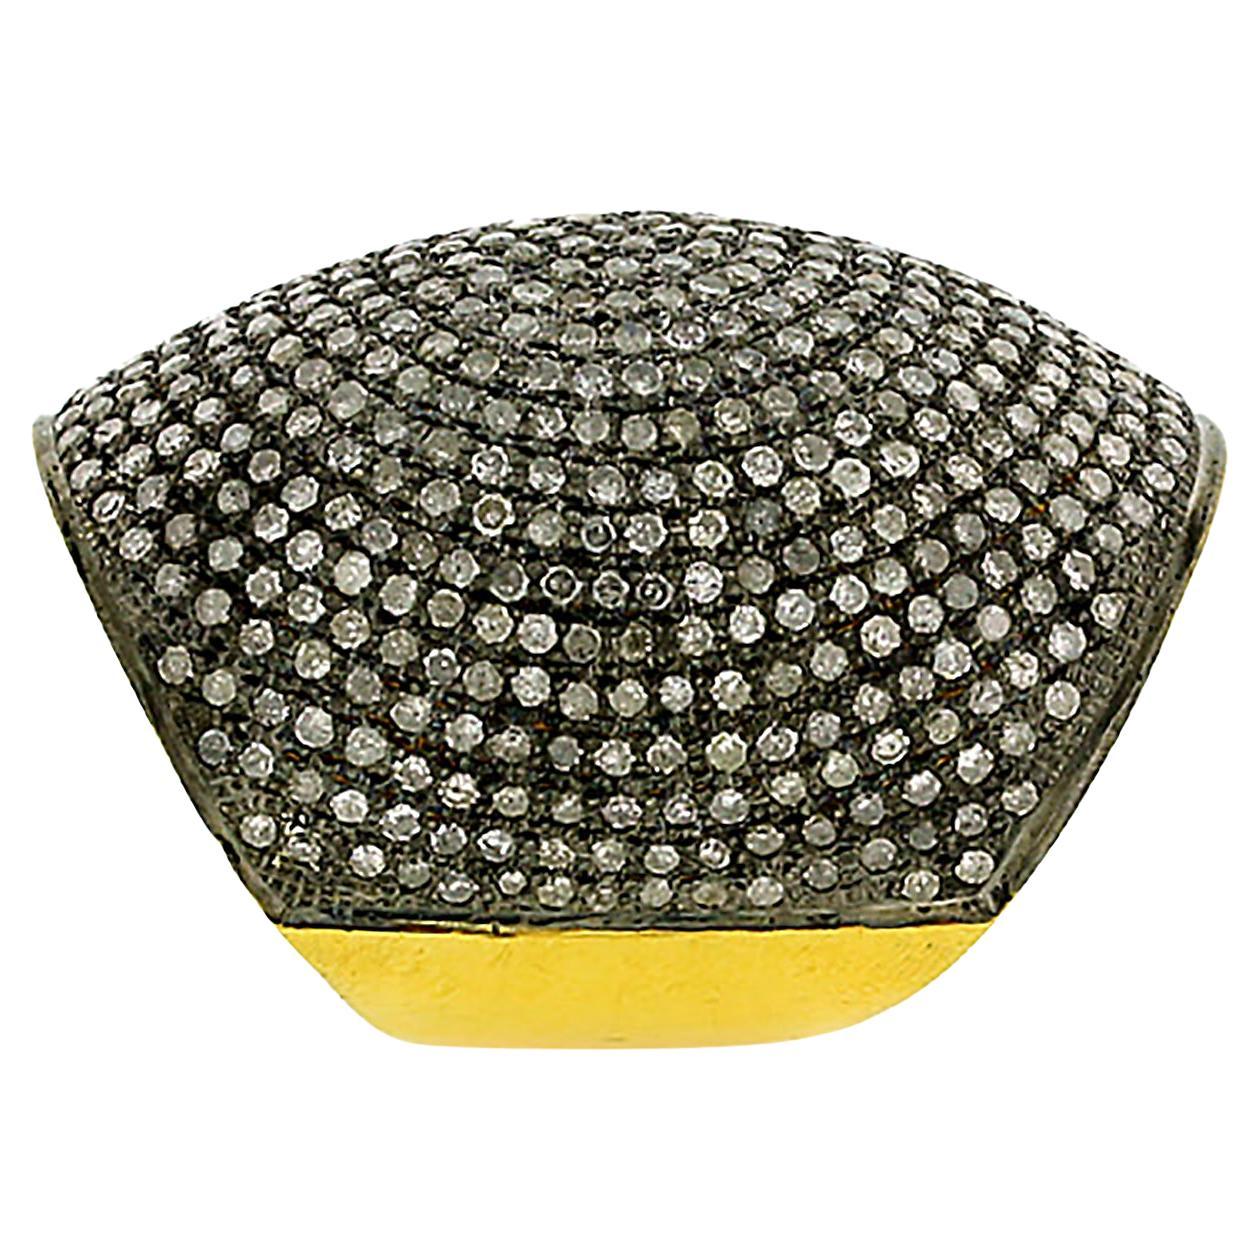 Schwarzer Pave Diamond Cocktail Dome Ring aus 14k Gelbgold & Silber